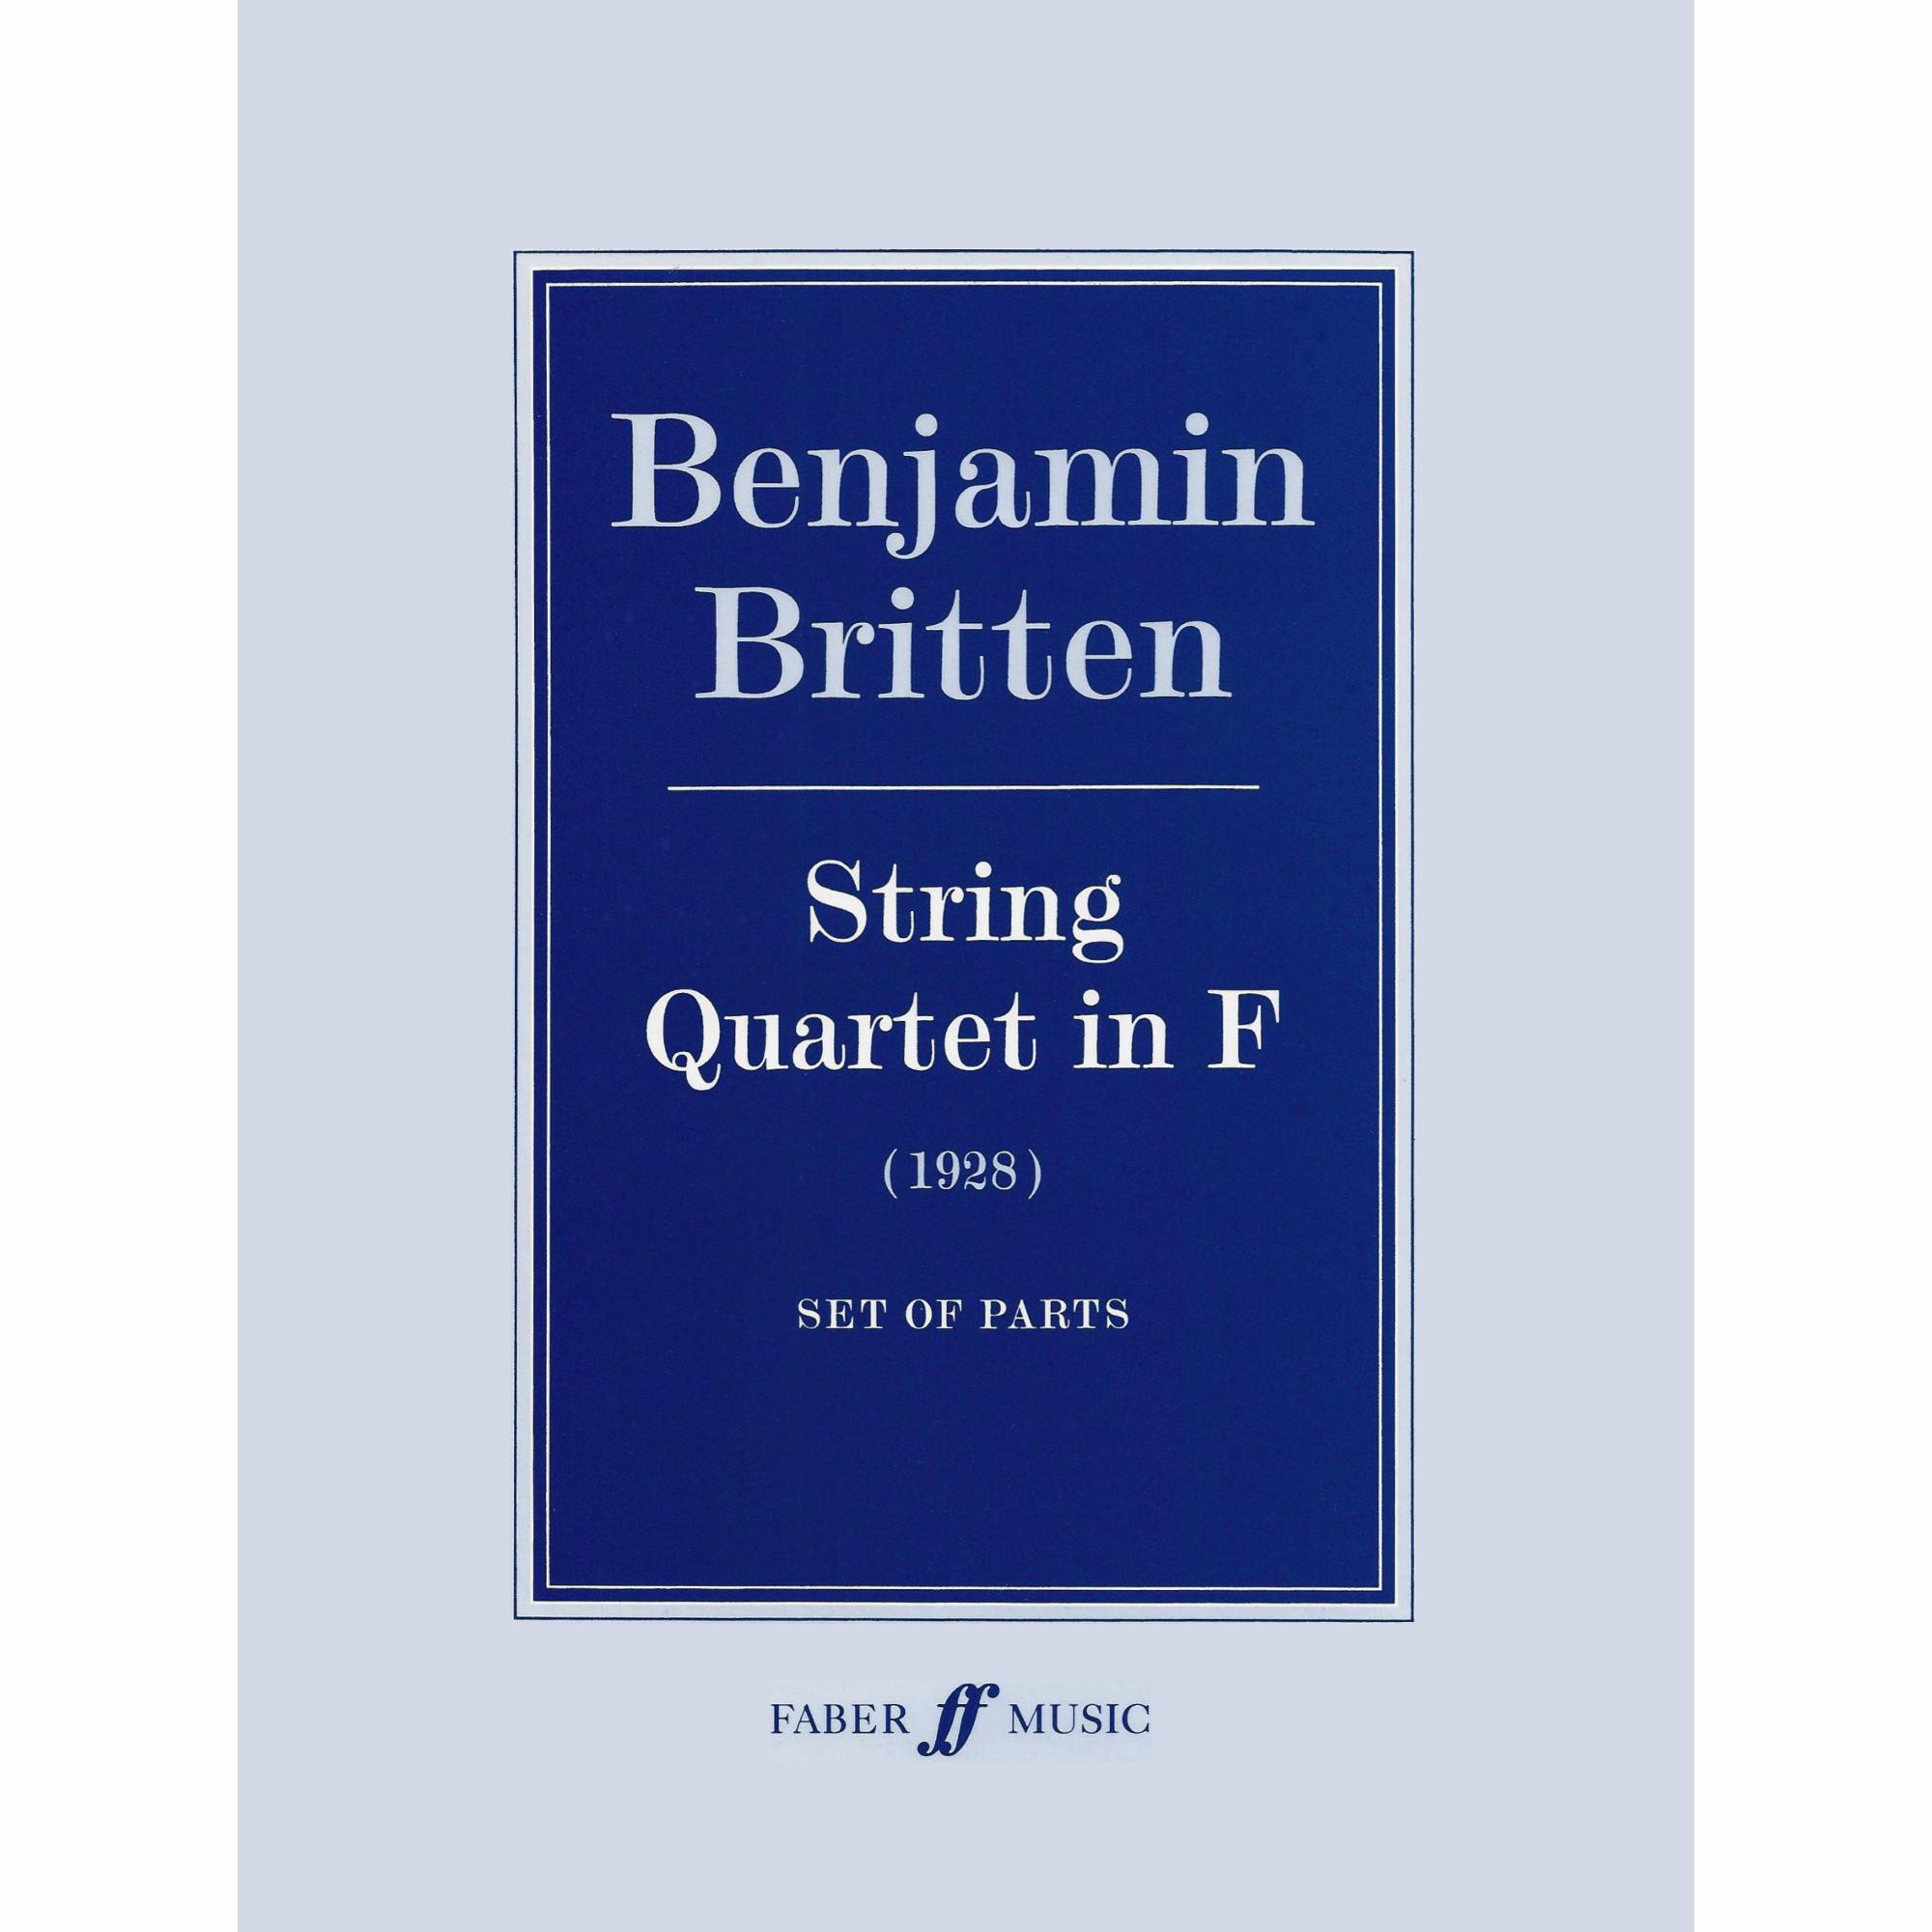 Britten -- String Quartet in F (1928)